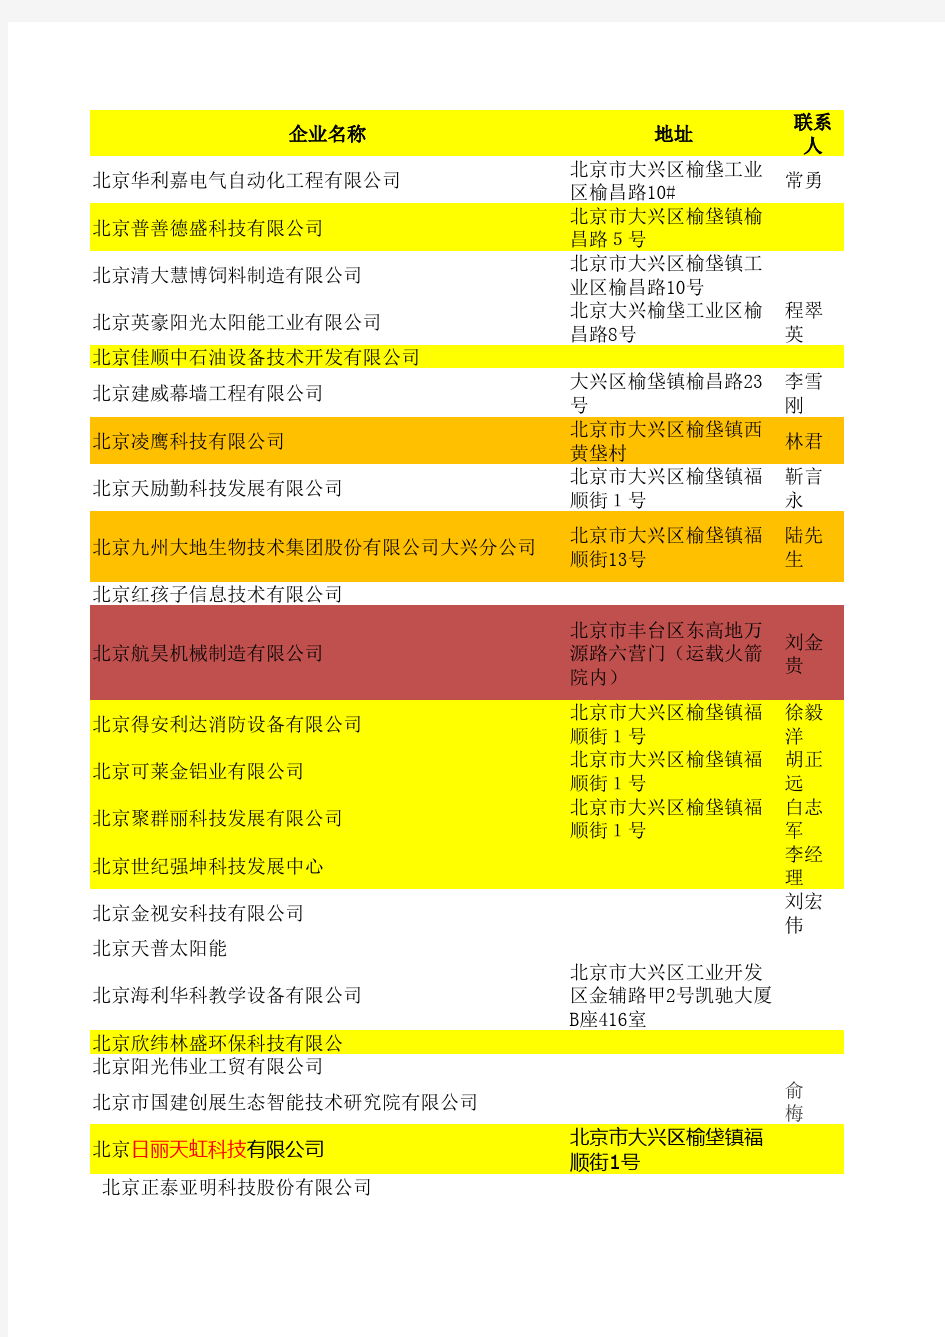 北京开发区(亦庄)电子企业名单